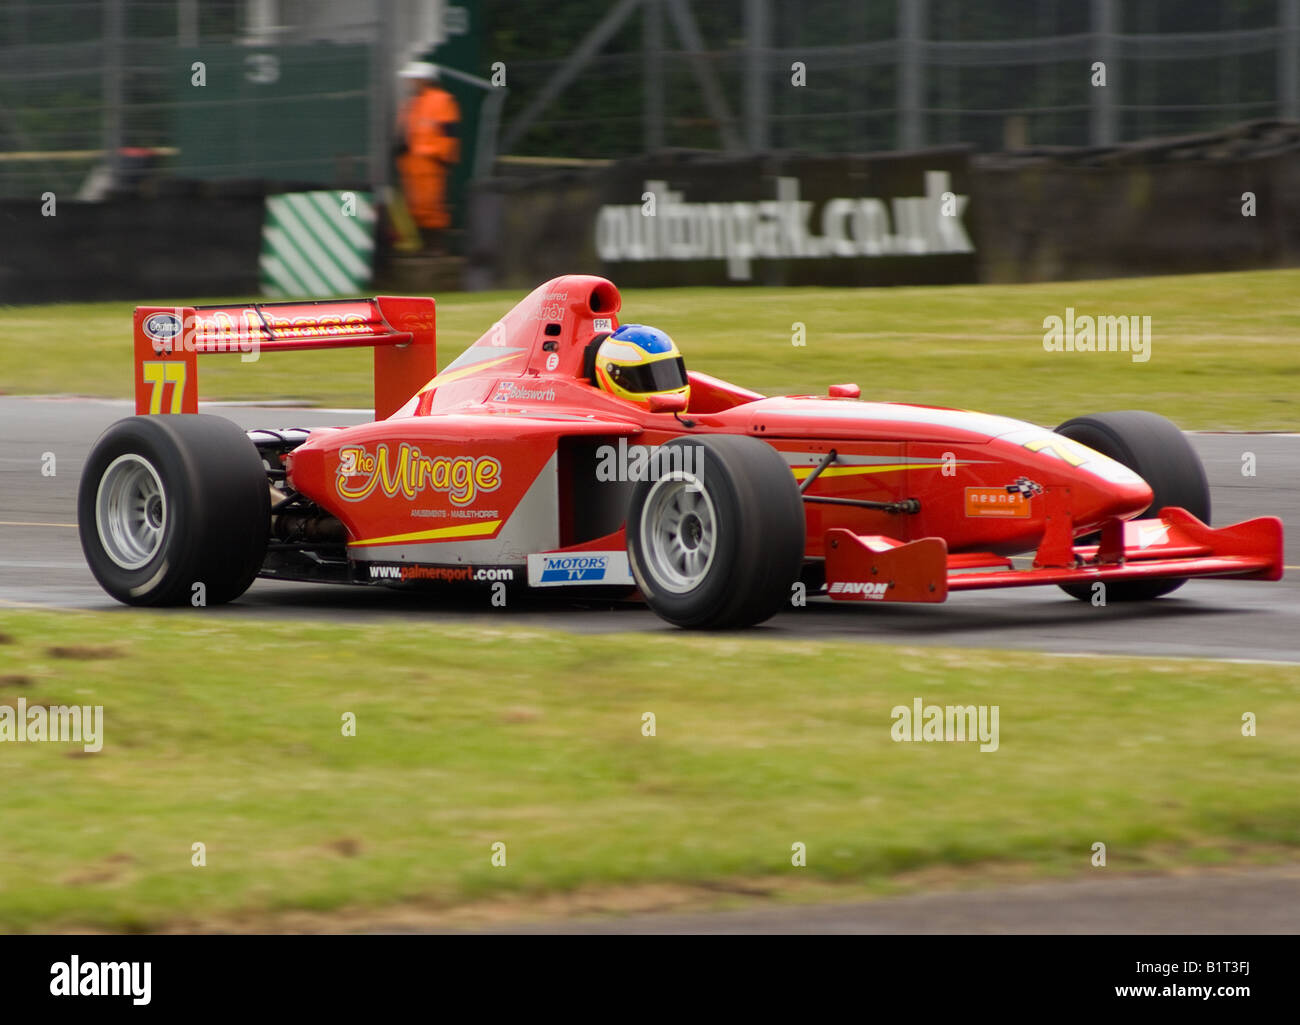 Voiture de course Formule Palmer Audi laissant Pit Road à Oulton Park Motor Racing Circuit Cheshire England Royaume-Uni UK Banque D'Images